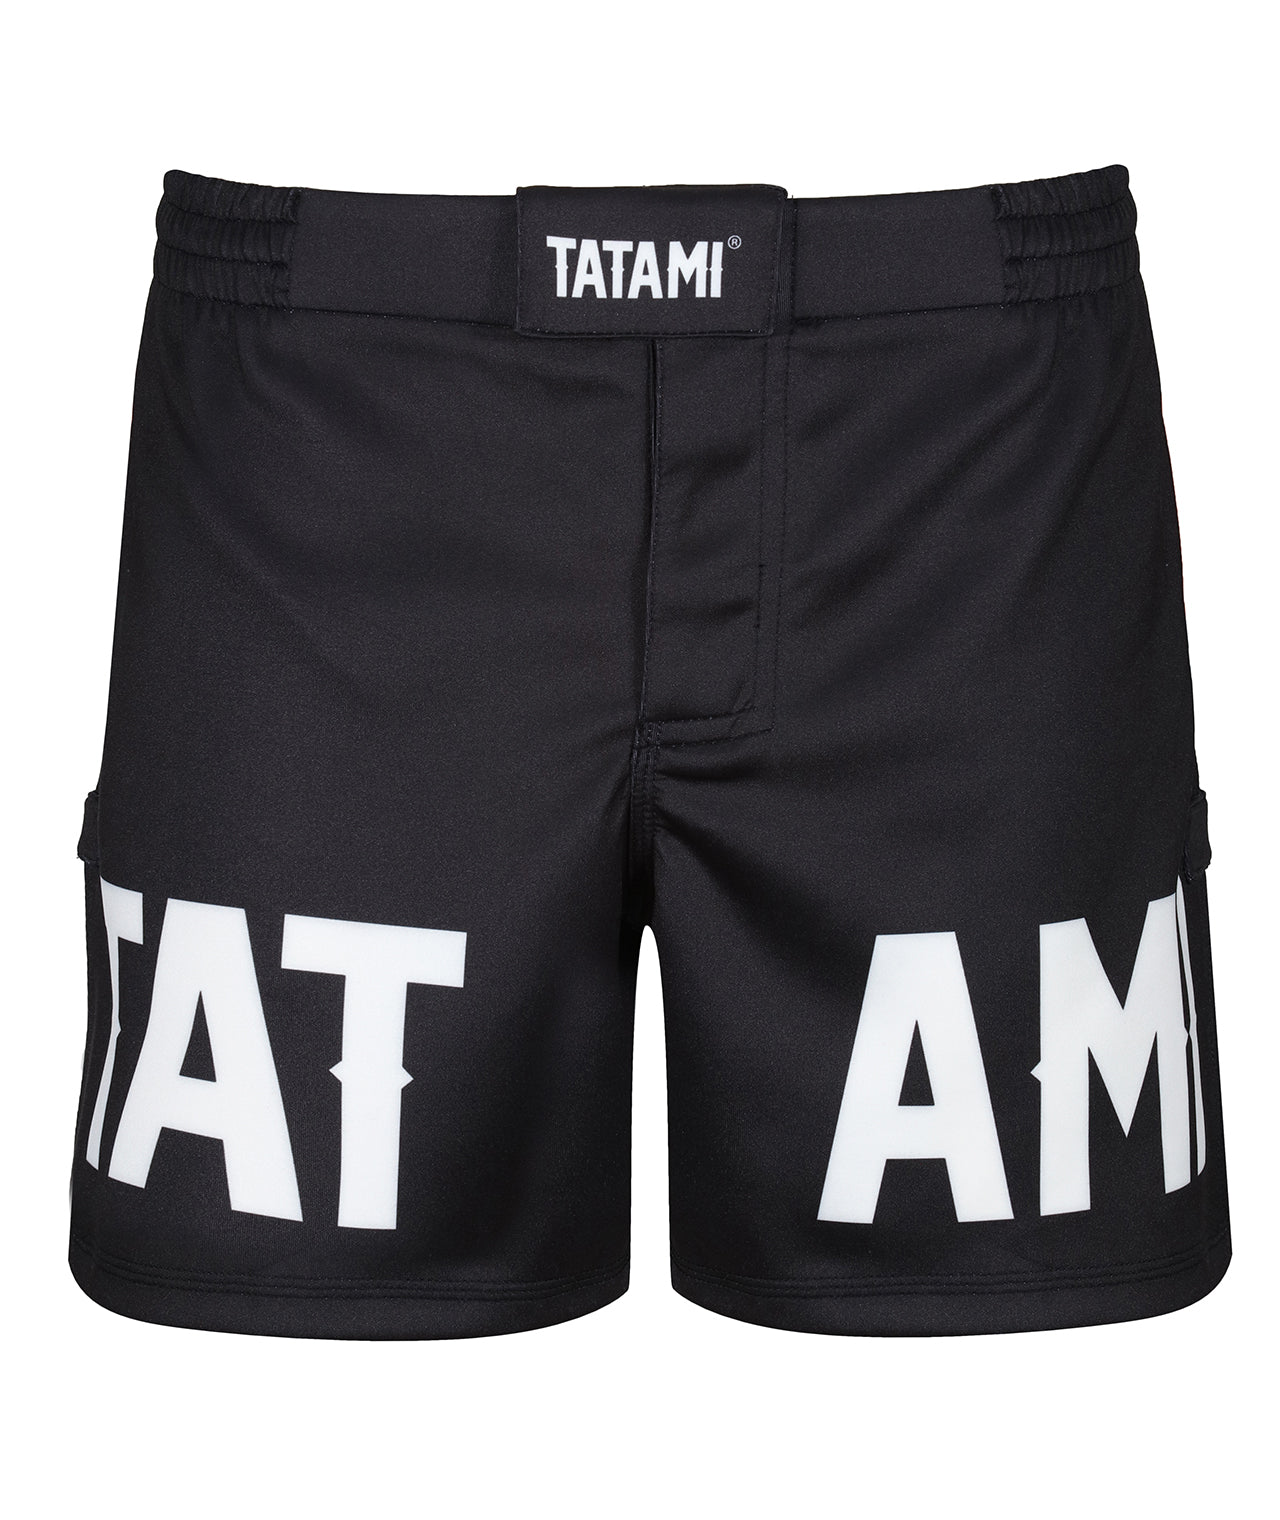 Tatami Raven Grappling Shorts